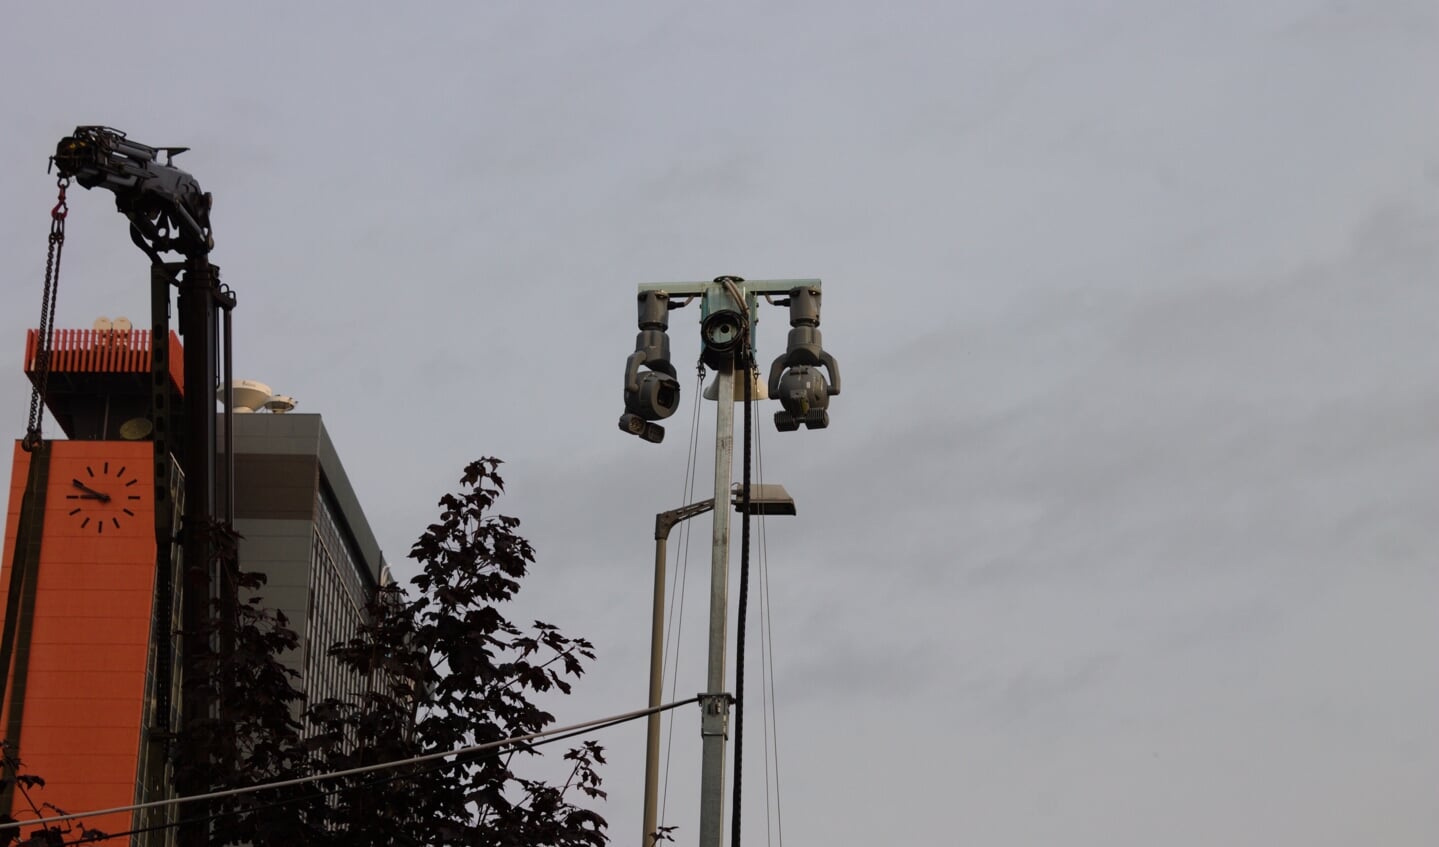 Over de cameratorens die op de TU Delft Campus waren geplaatst was vorig jaar commotie